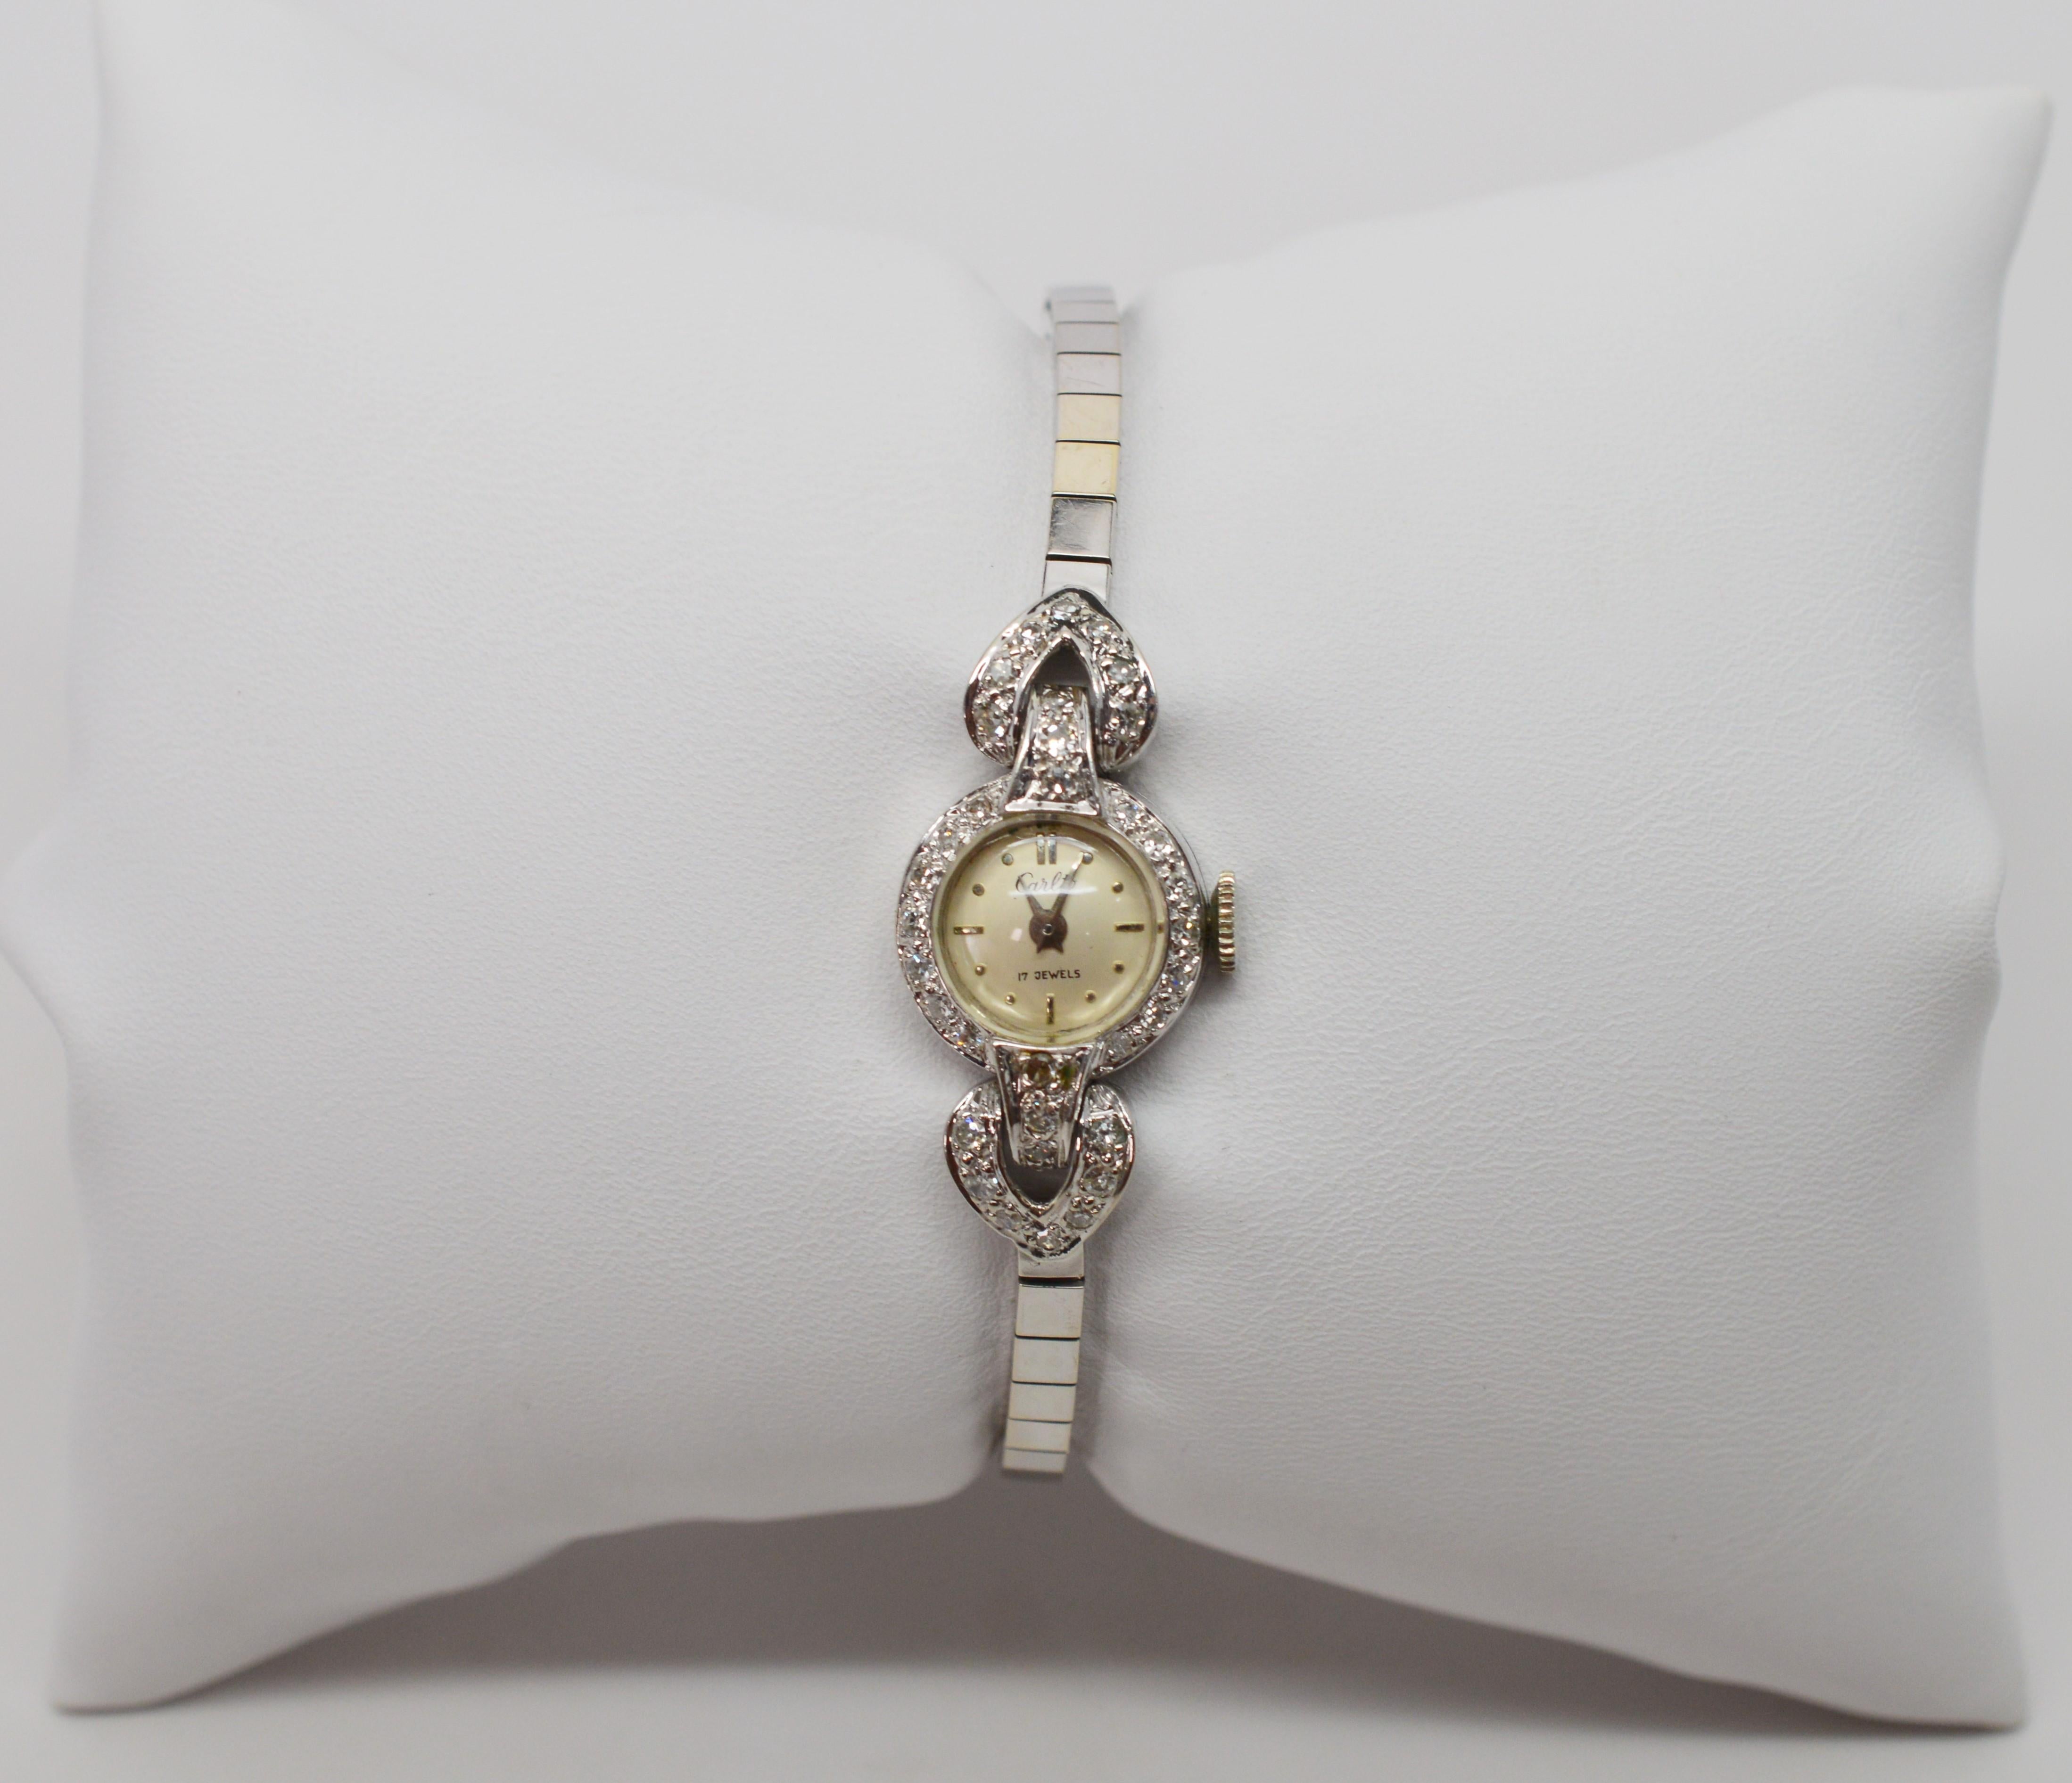 Fein und feminin in vierzehn Karat Weißgold ist diese diamantbesetzte antike Armbanduhr für Damen von Carloto. 
Sechsunddreißig H/I1-Diamanten mit einem Gesamtgewicht von einem Drittel Karat zieren die zierliche runde Vorderseite und die